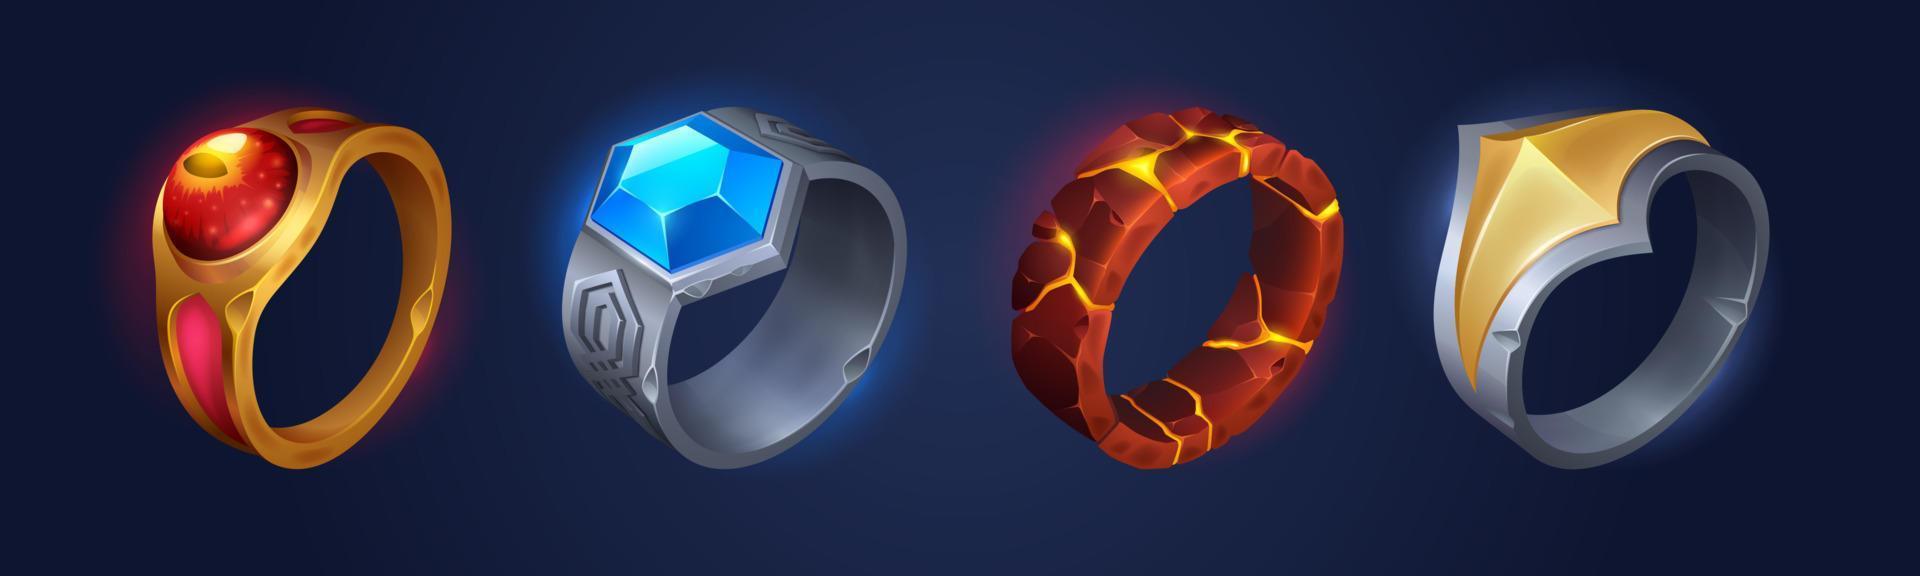 magi ringar och fantasi Smycken spel rekvisita ikoner vektor